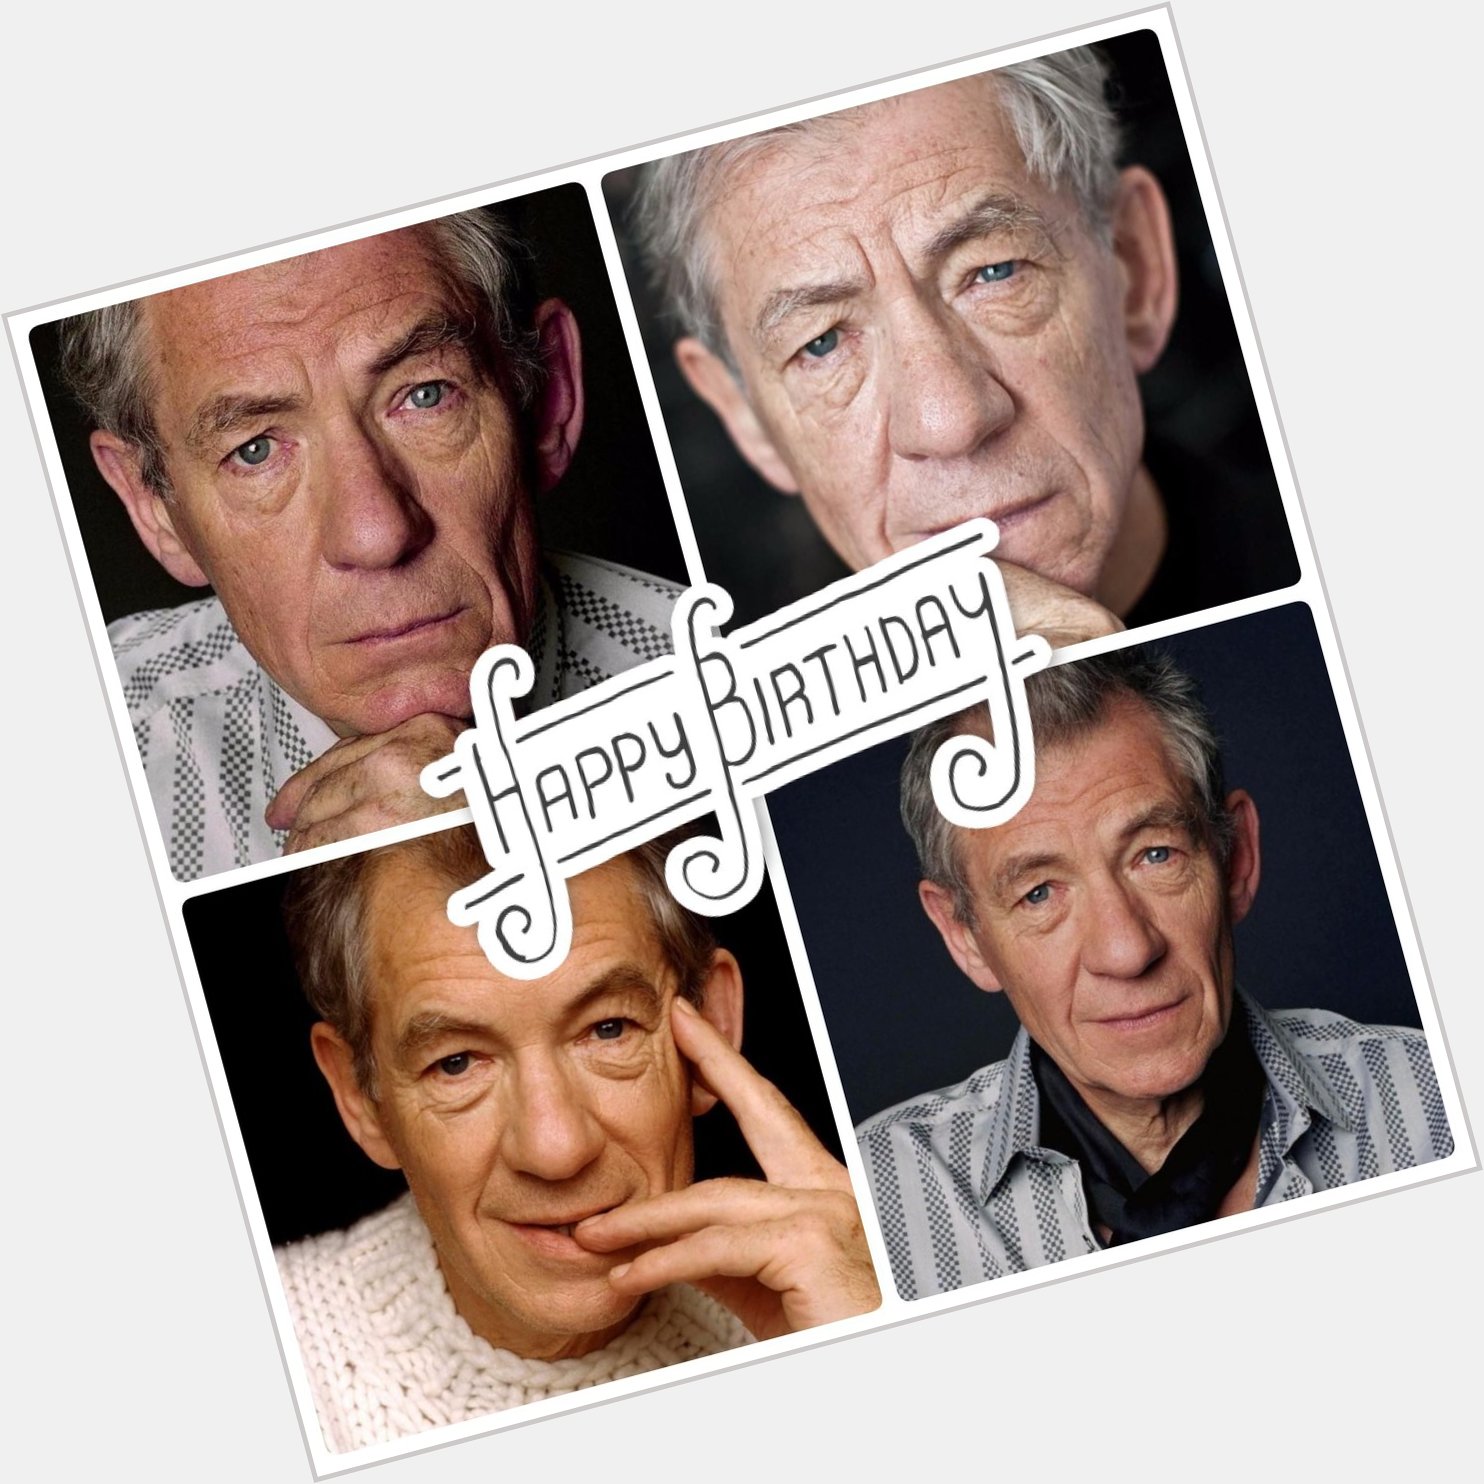 Happy Birthday to the living legend, Ian McKellen. Help us wish him the very best today! 